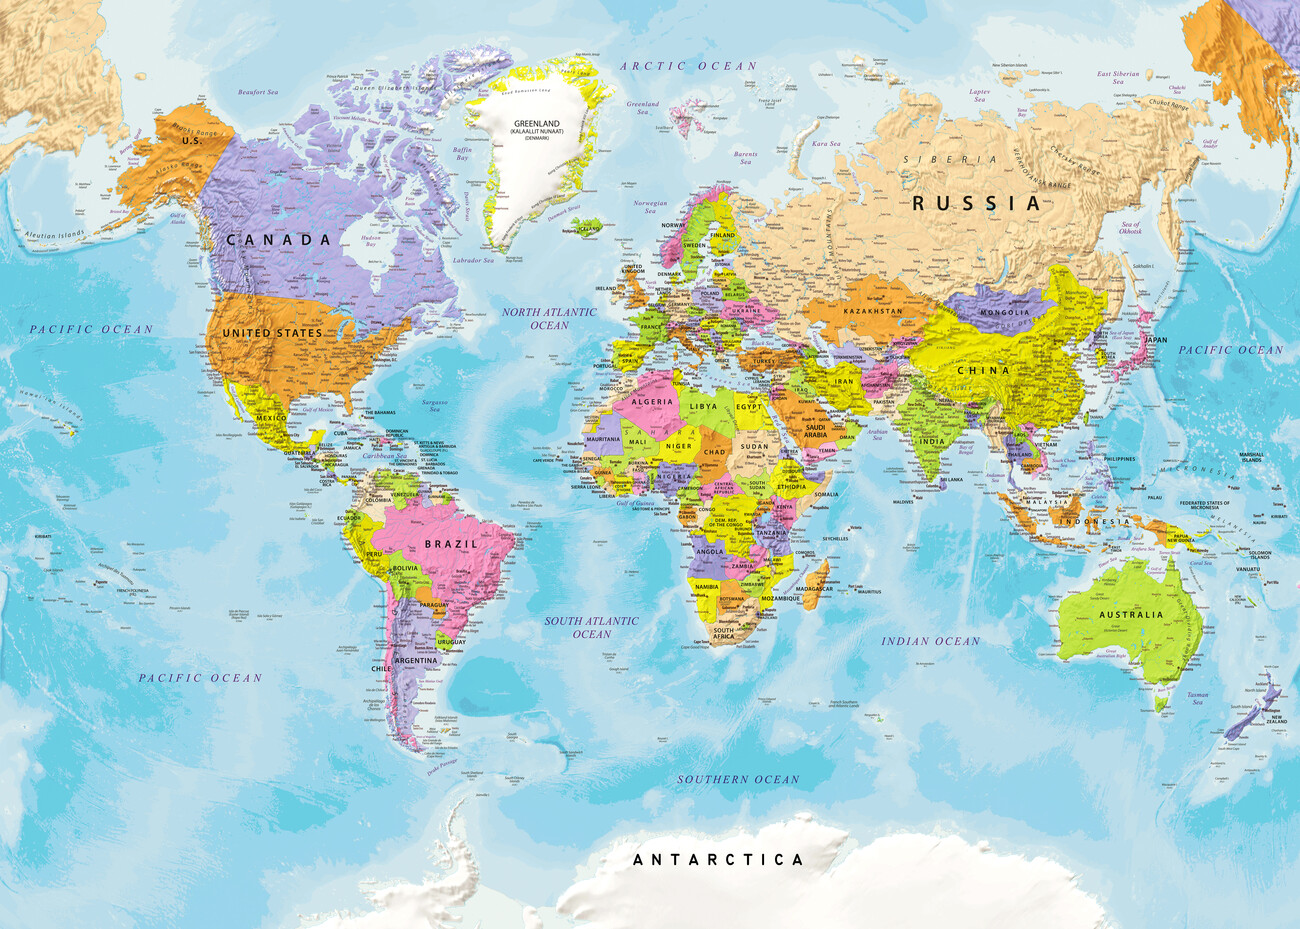 world atlas political